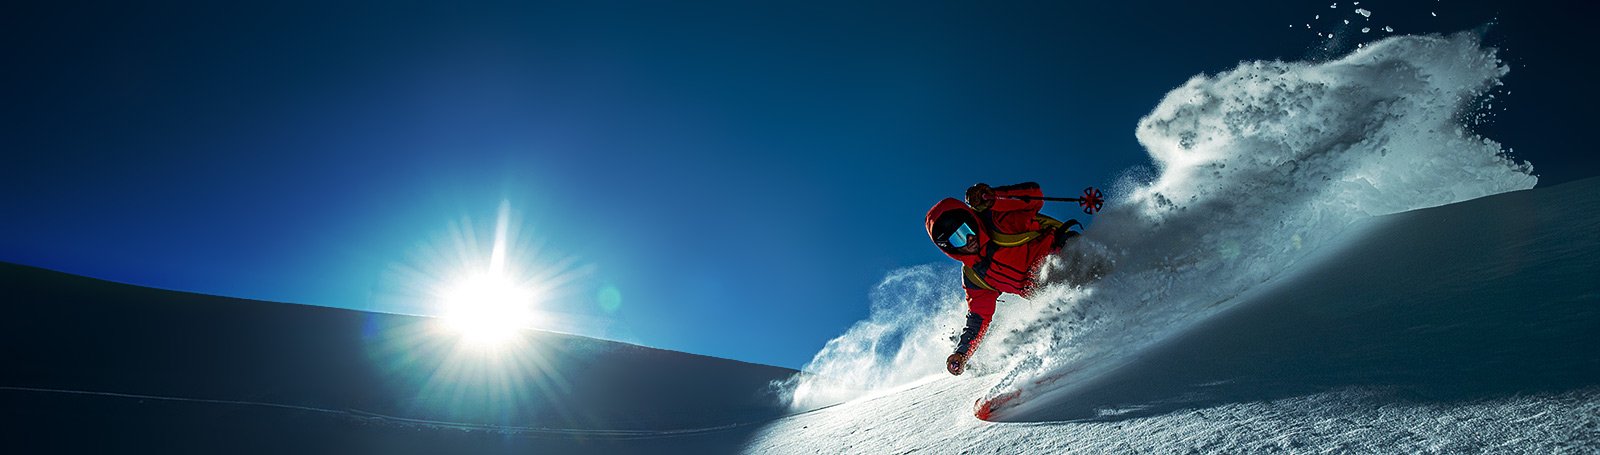 Glisshop - Acquisto sci, vendita attrezzatura sci, snowboard, sci nordico